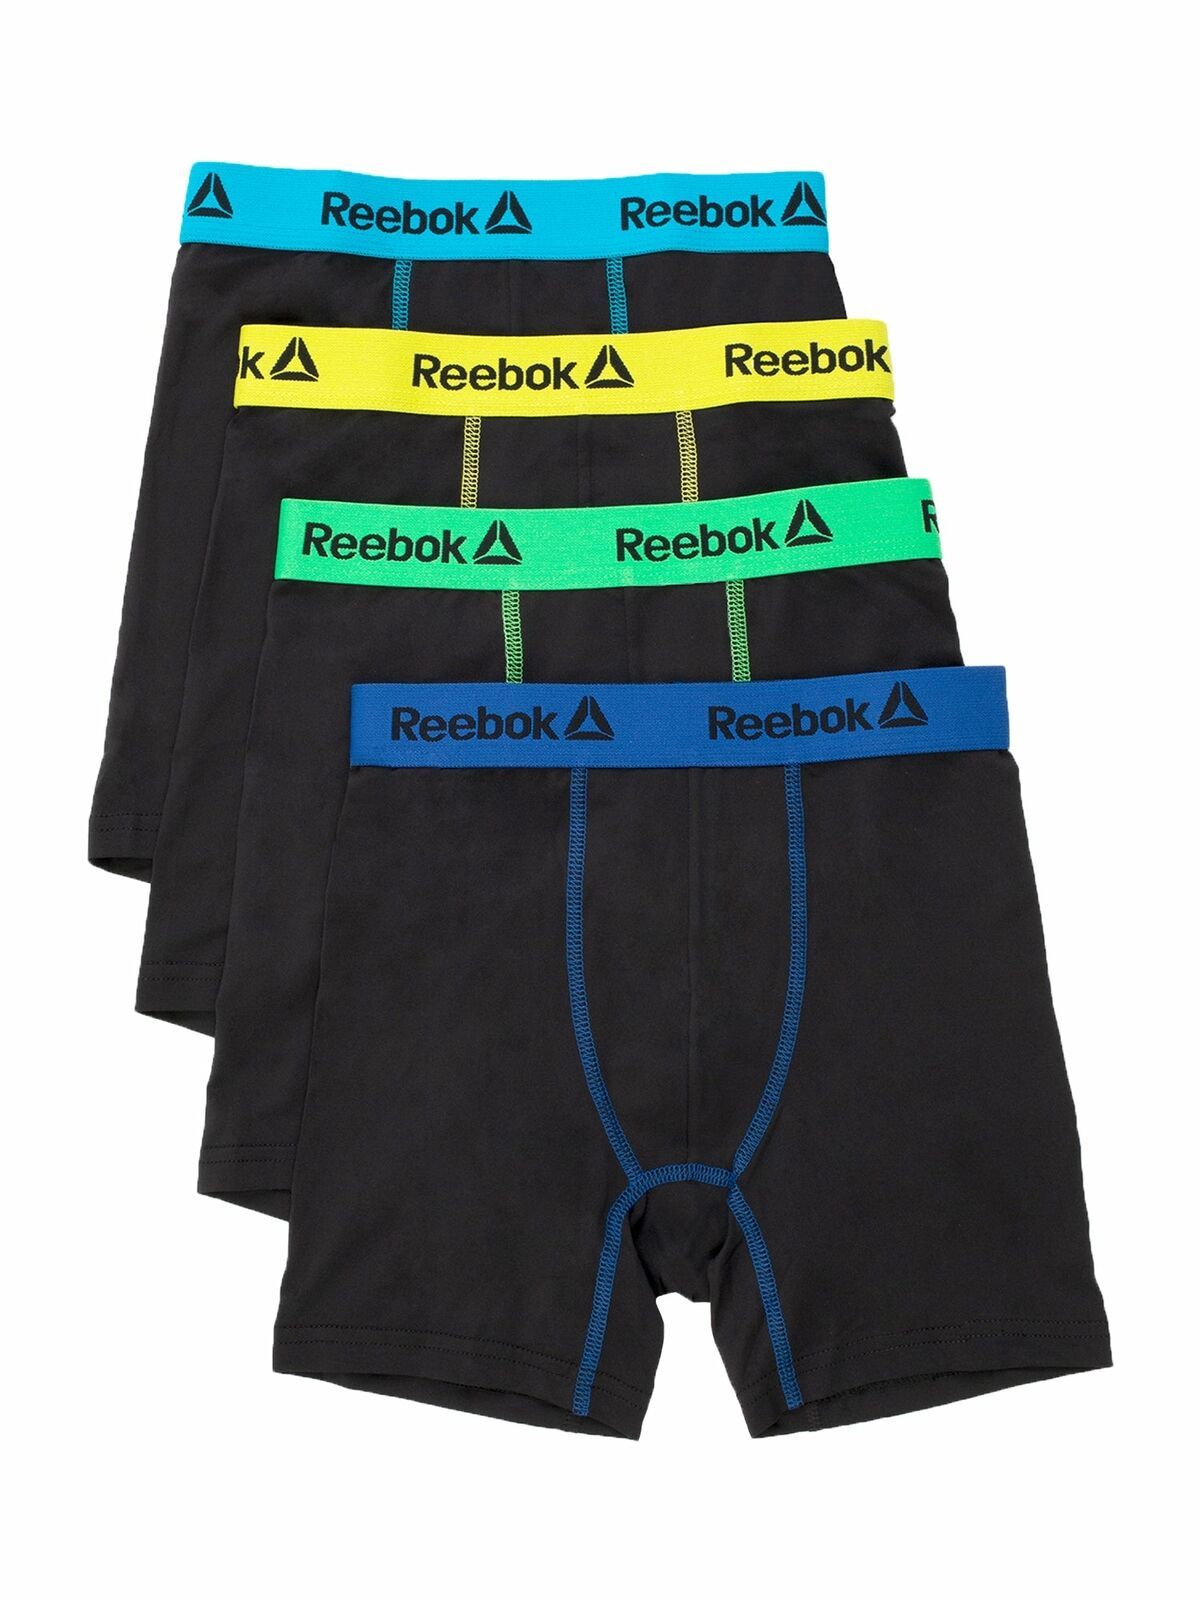 Reebok Boys' Boxer Briefs Underwear, 4-Pack